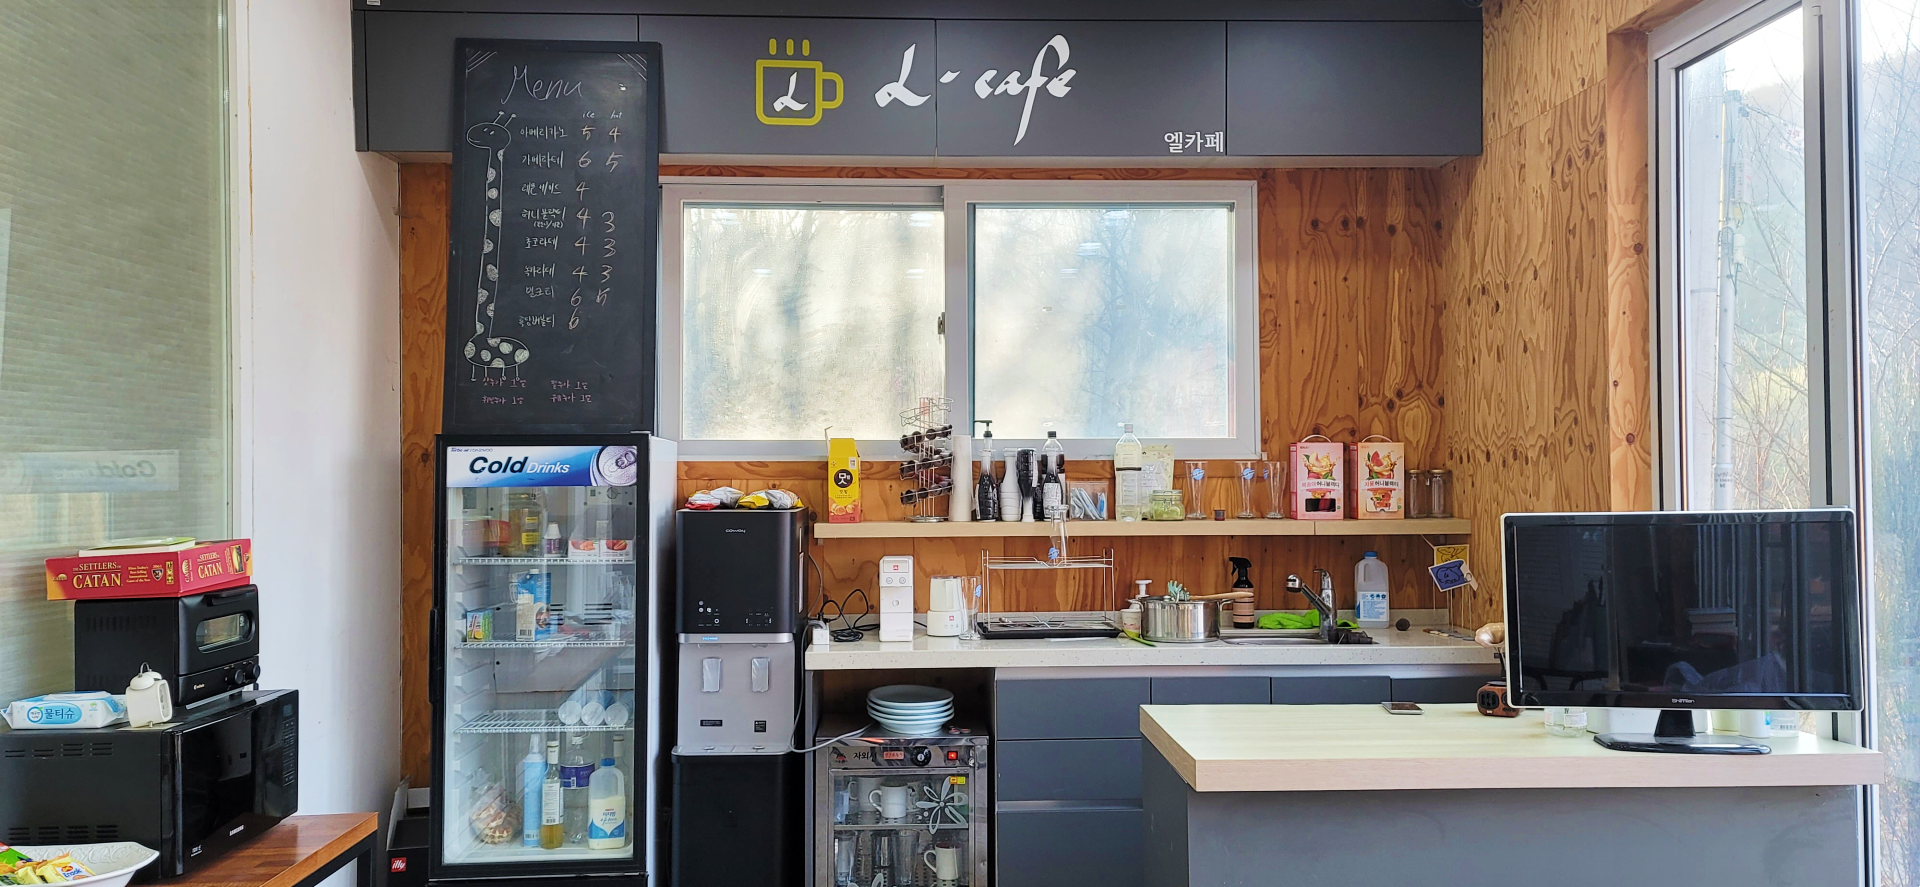 리퍼블릭 내에서 운영되고 있는 카페 L·Cafe (엘카페), 각종 음료와 디저트 판매